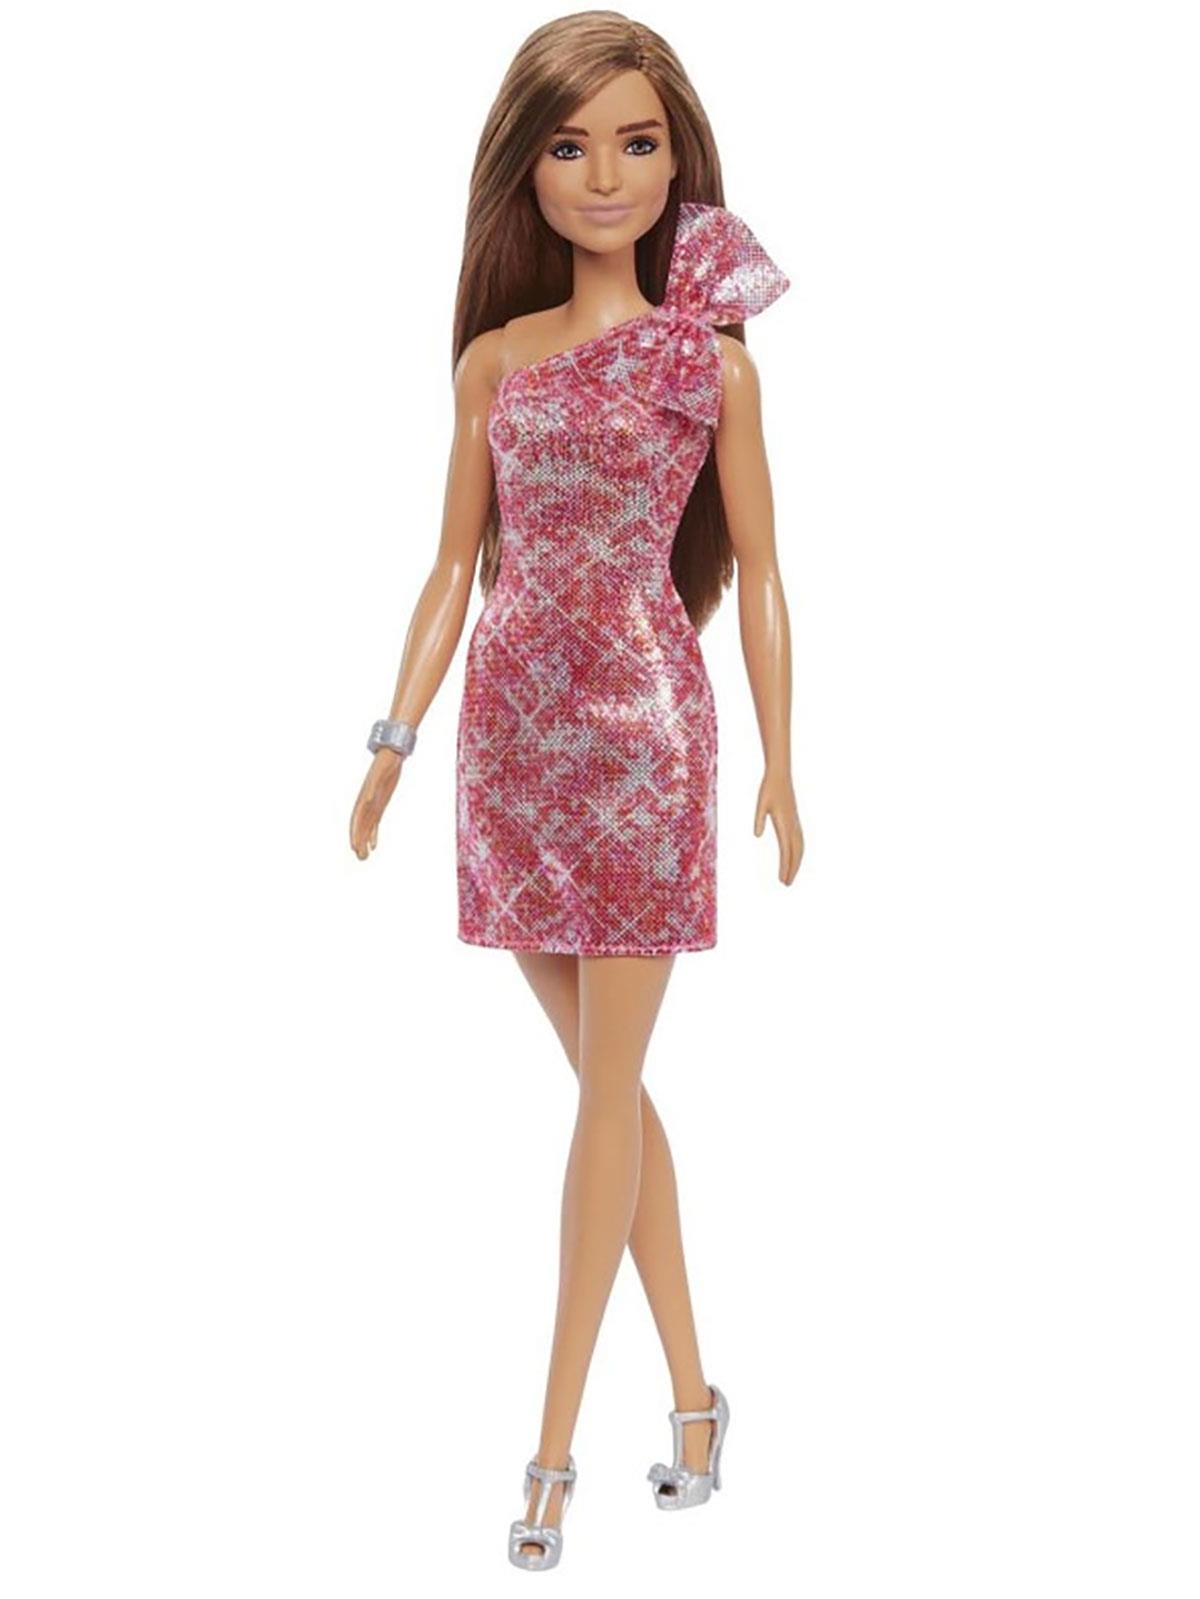 Barbie Şık Kıyafetli Bebekler  - Fuşya Elbiseli 3+ Yaş